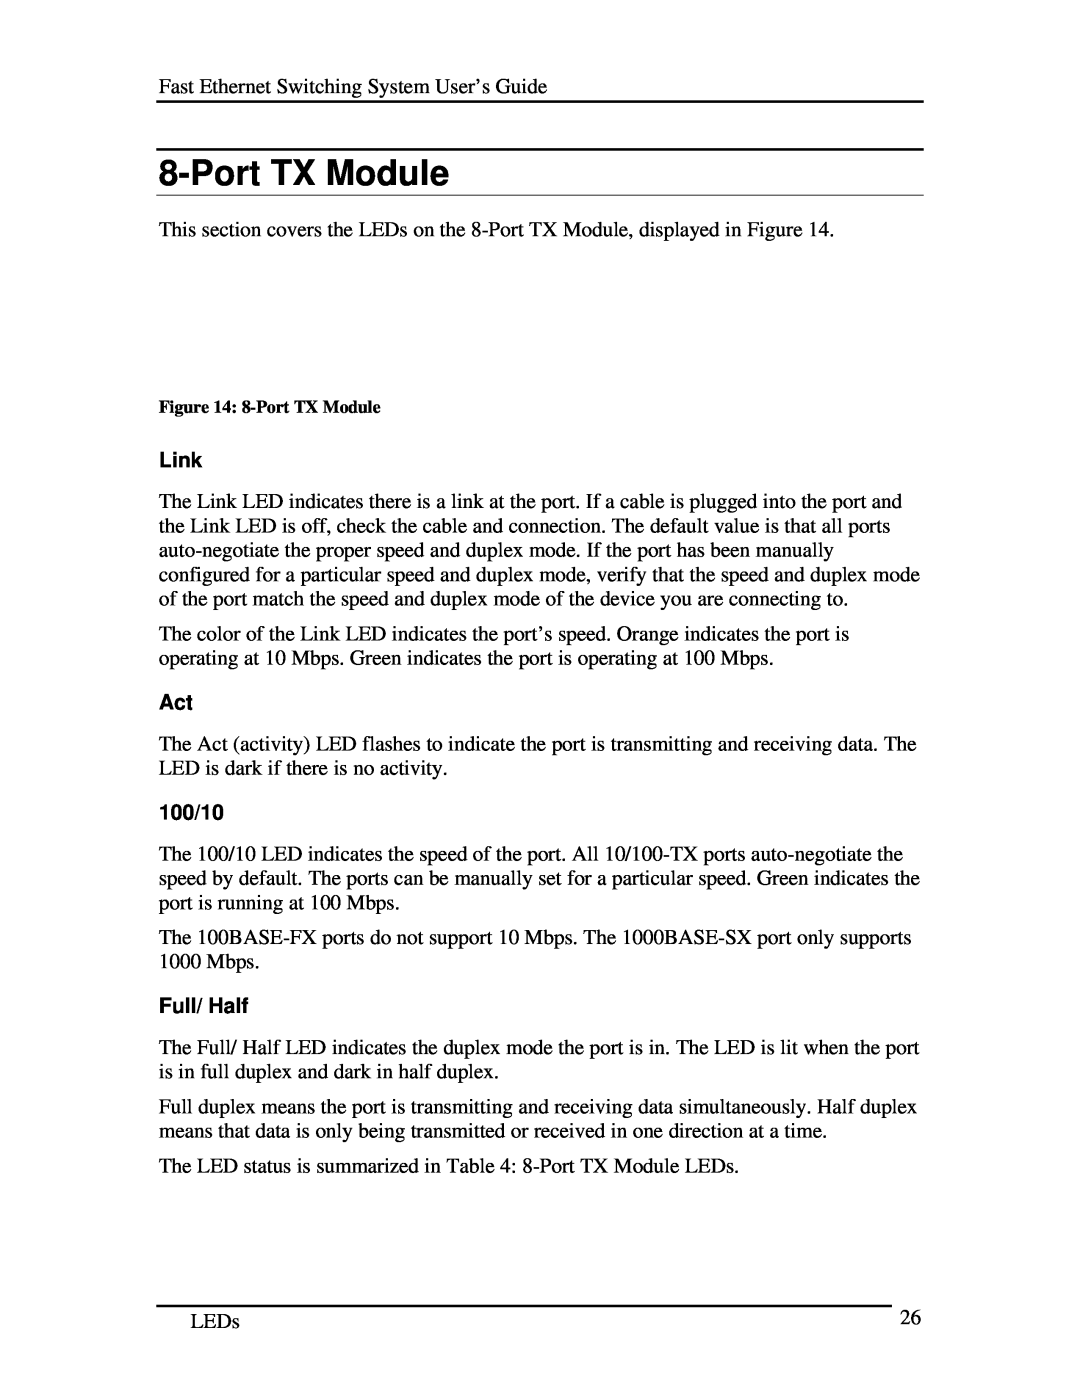 D-Link DES-5016 manual Port TX Module, Link, 100/10, Full/ Half 